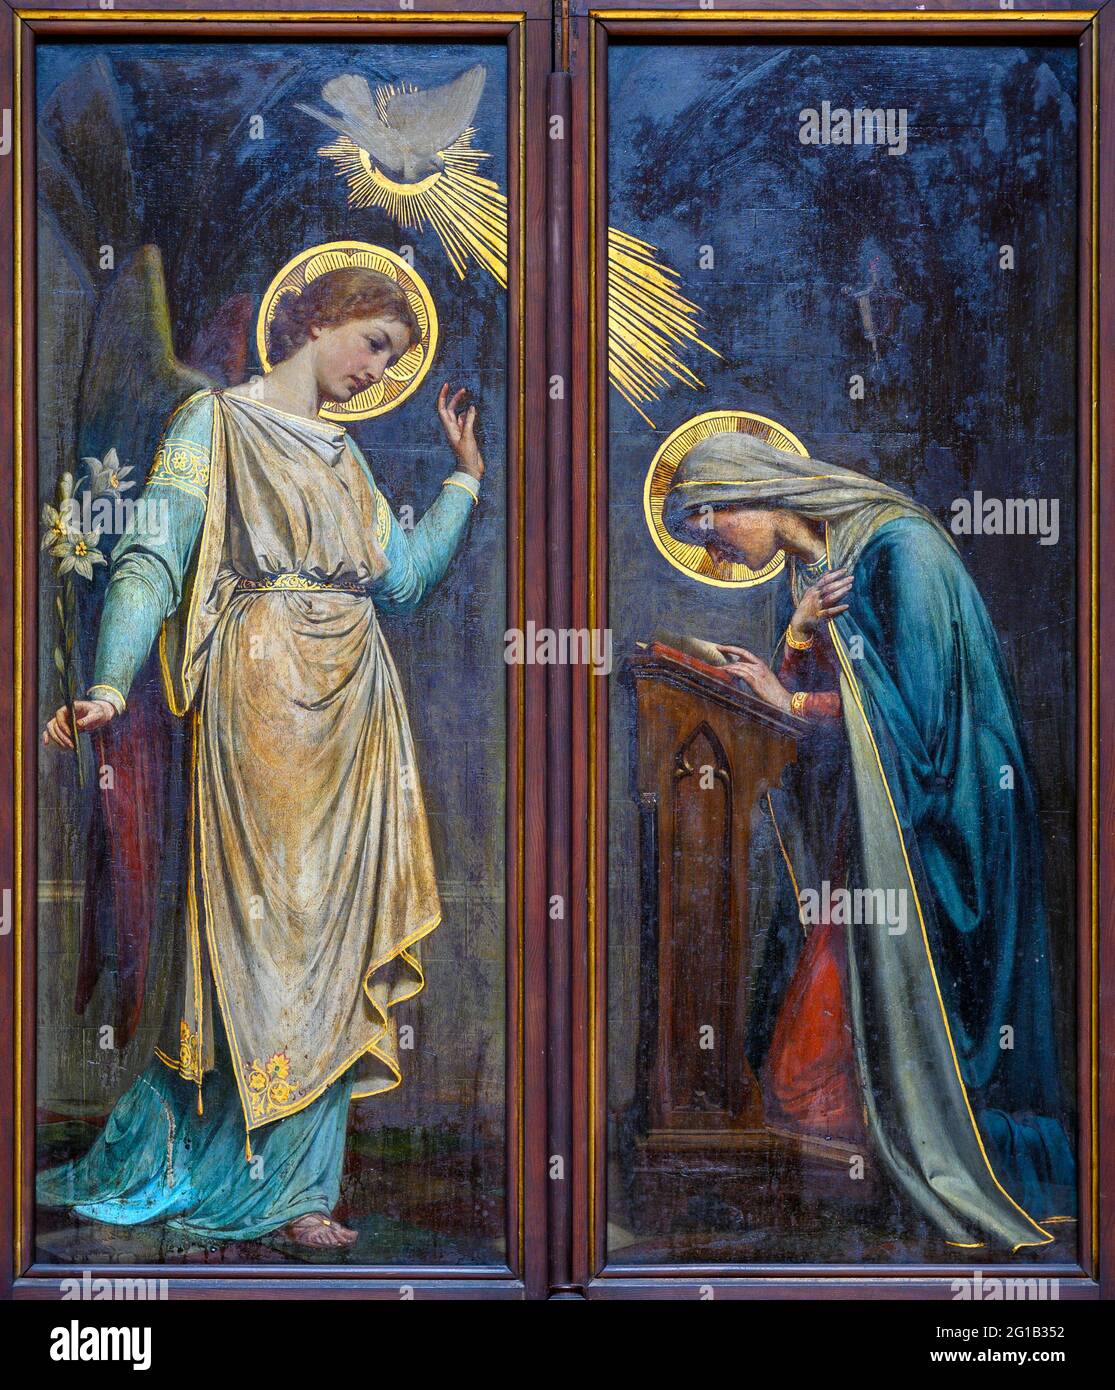 Gemälde der Verkündigung an die selige Jungfrau Maria. Votivkirche, Wien – Votivkirche, Wien. Stockfoto